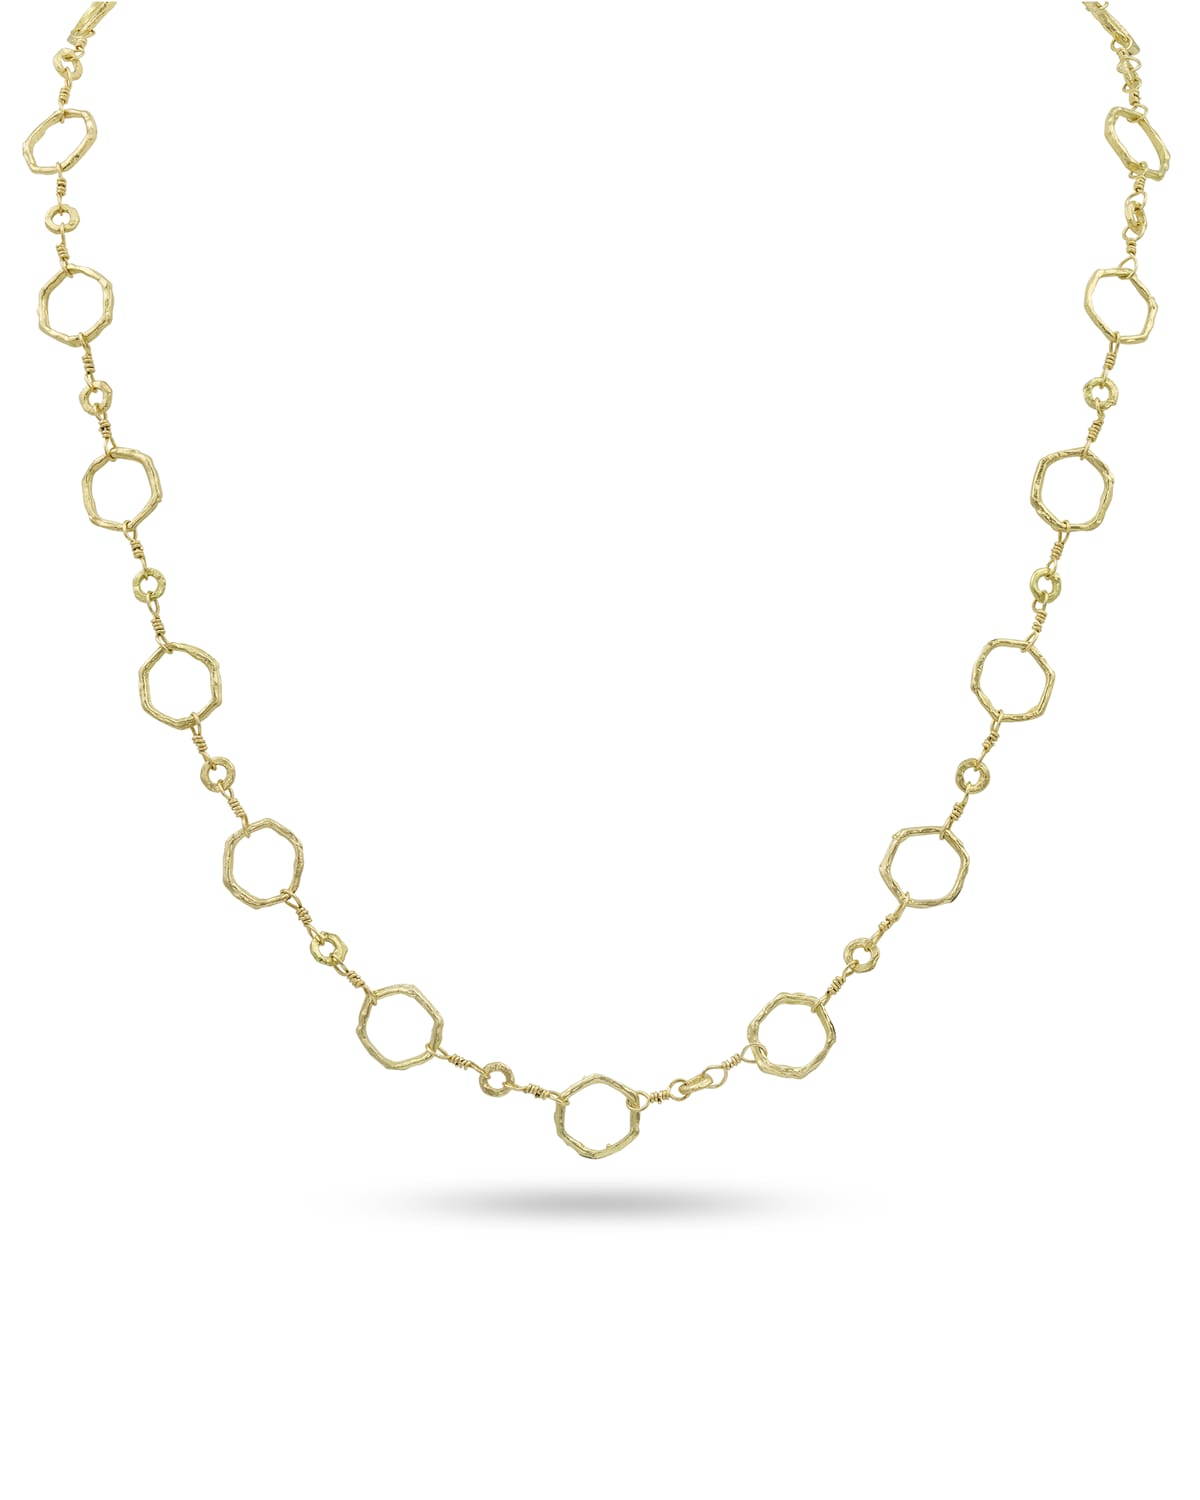 Dominique Cohen 18k Gold Hexagonal Chain Necklace